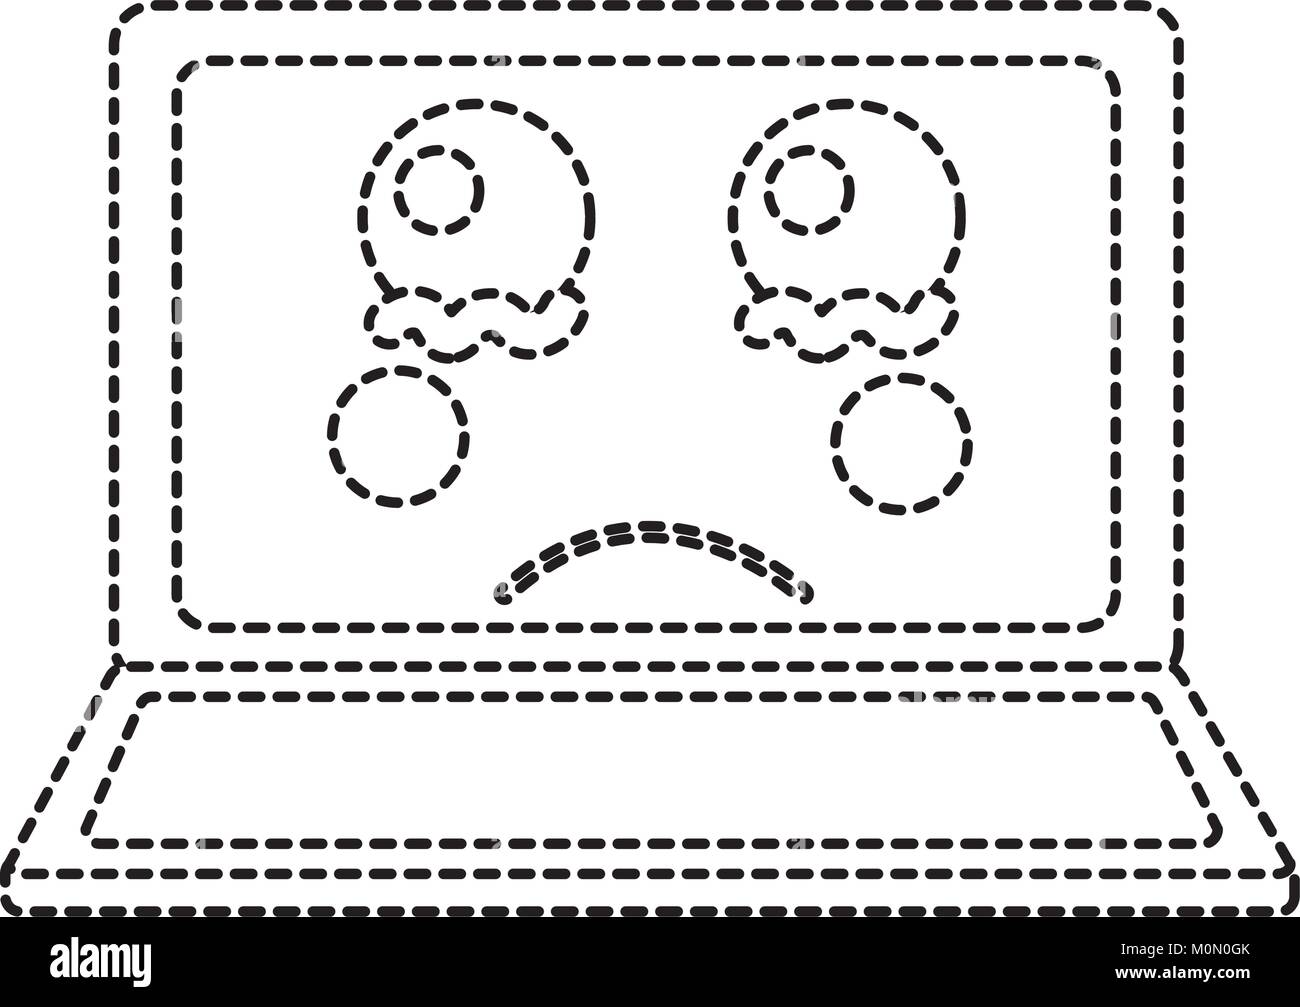 sad laptop kawaii icon image Stock Vector Image & Art - Alamy